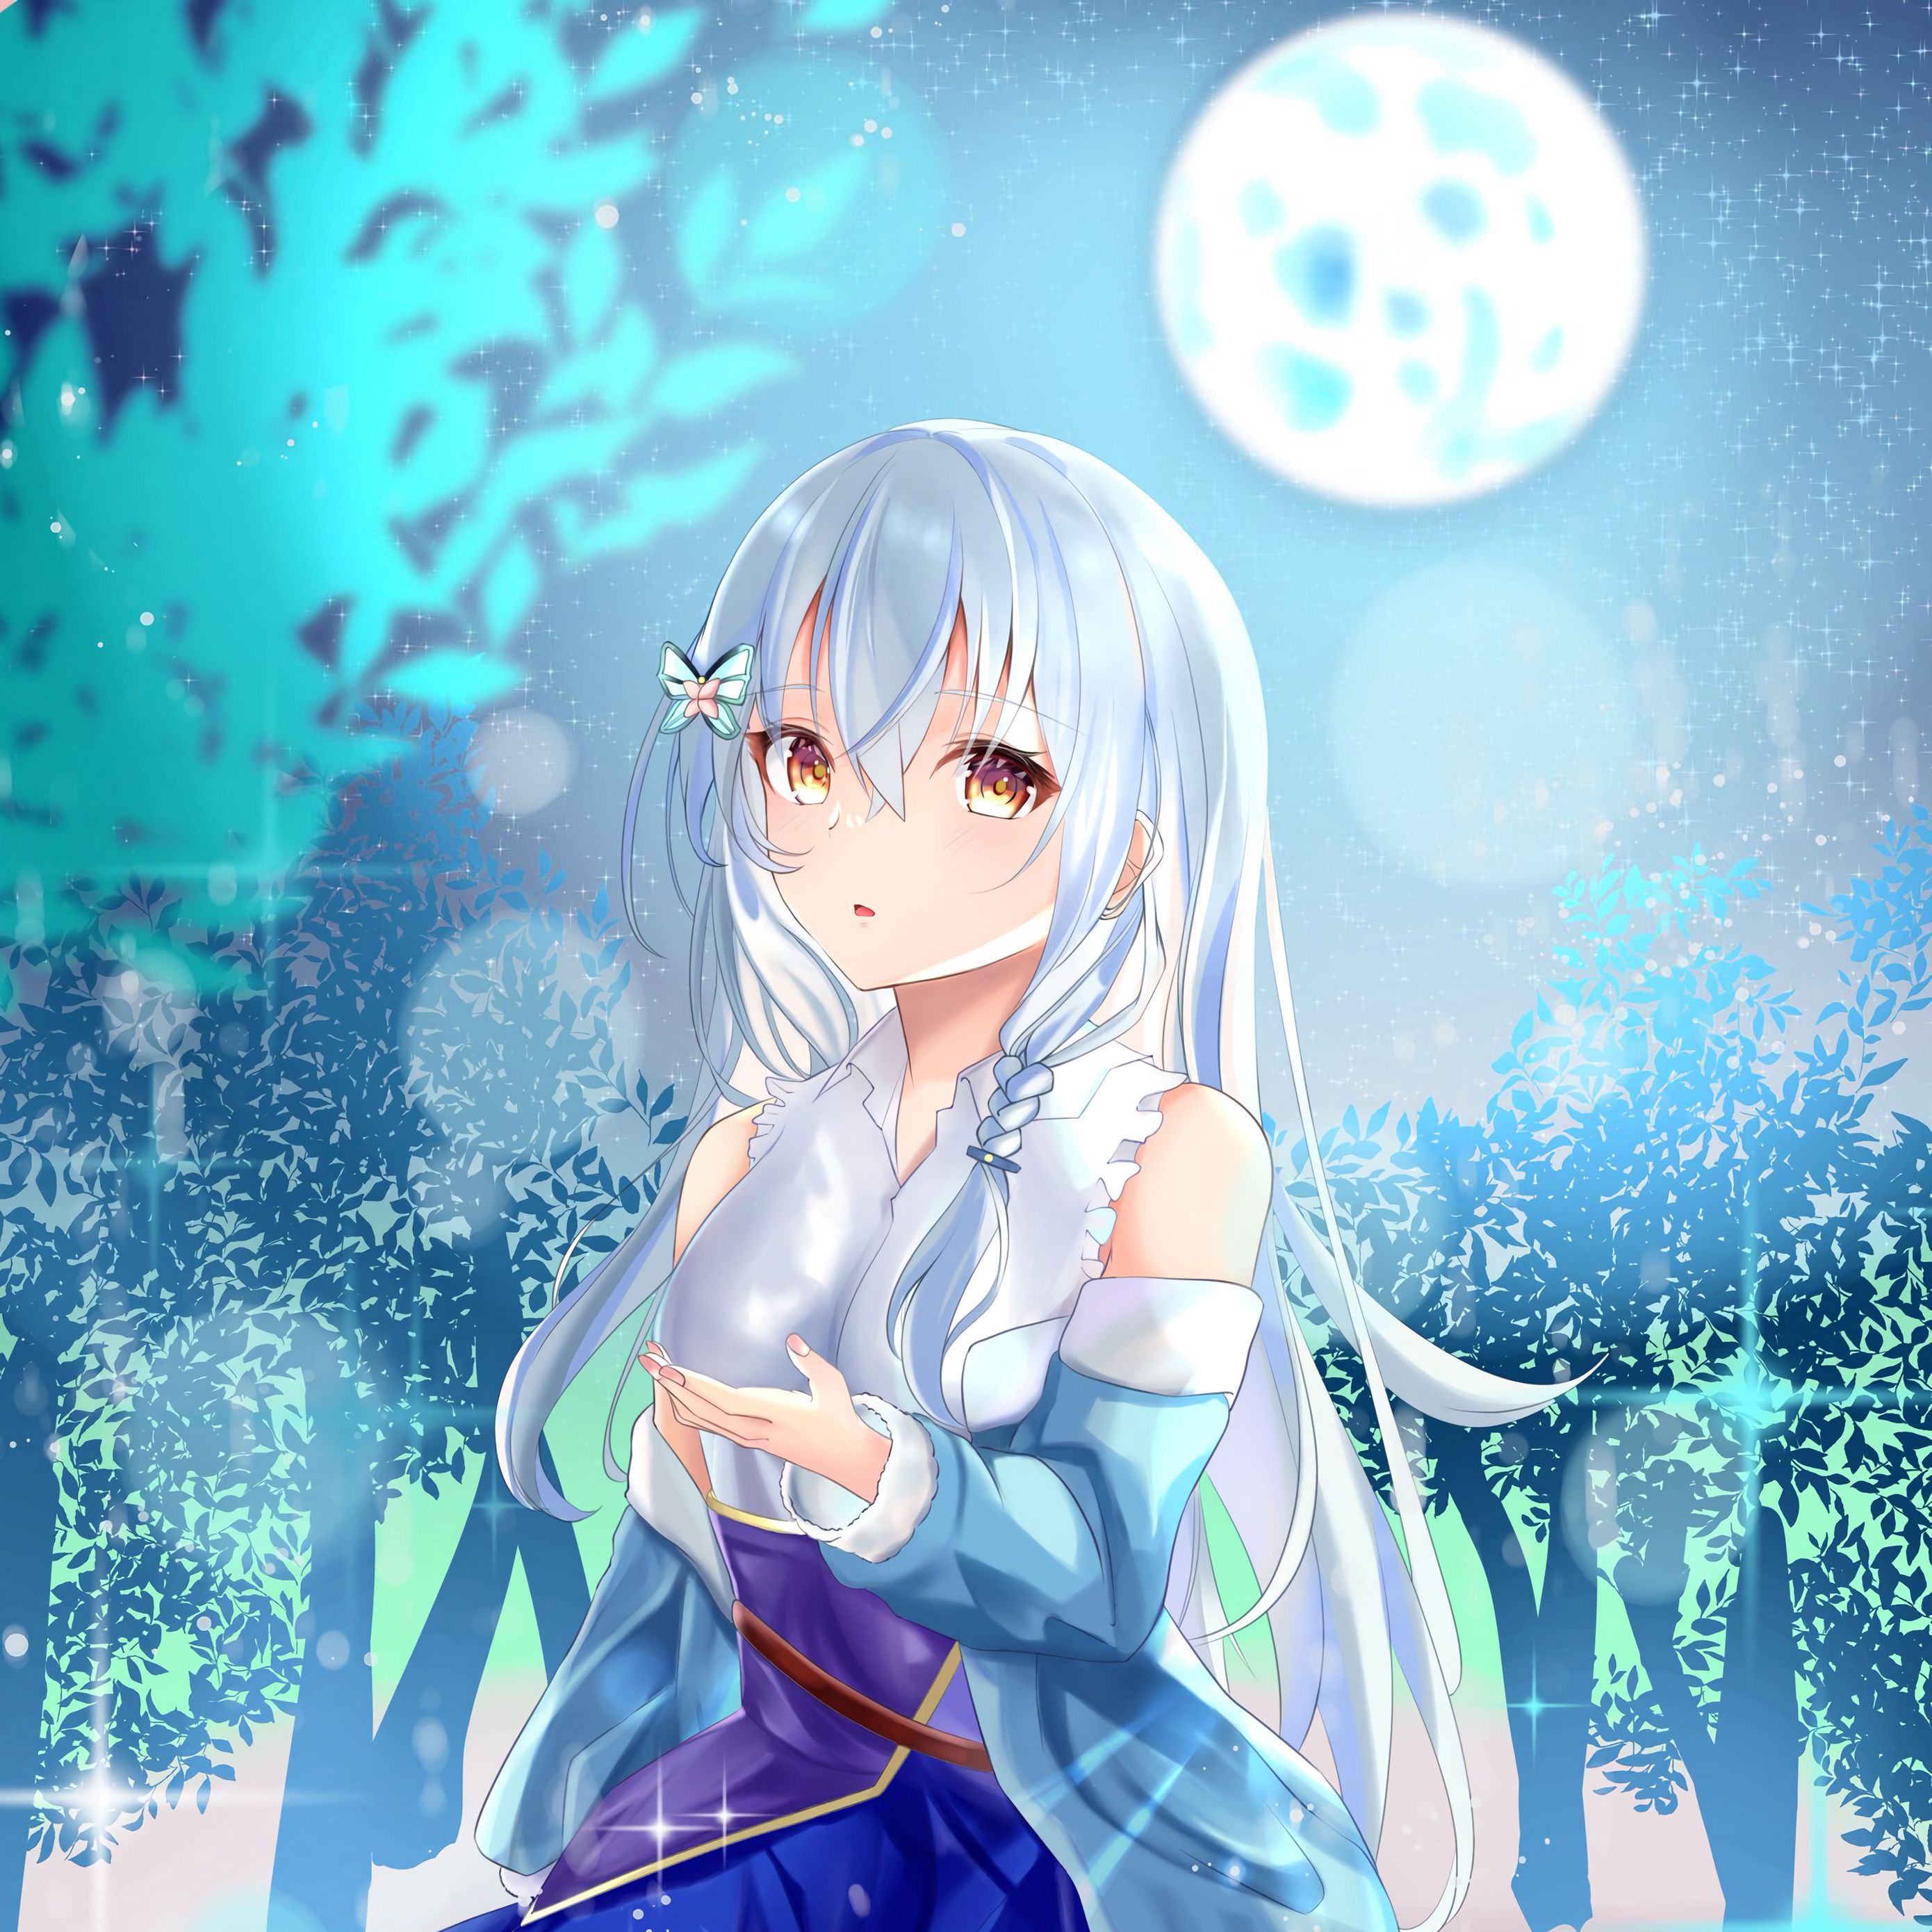 Premium Photo | Anime girl with snow-white hair, bangs falling on the eye,  snowflakes flying around, creative ai